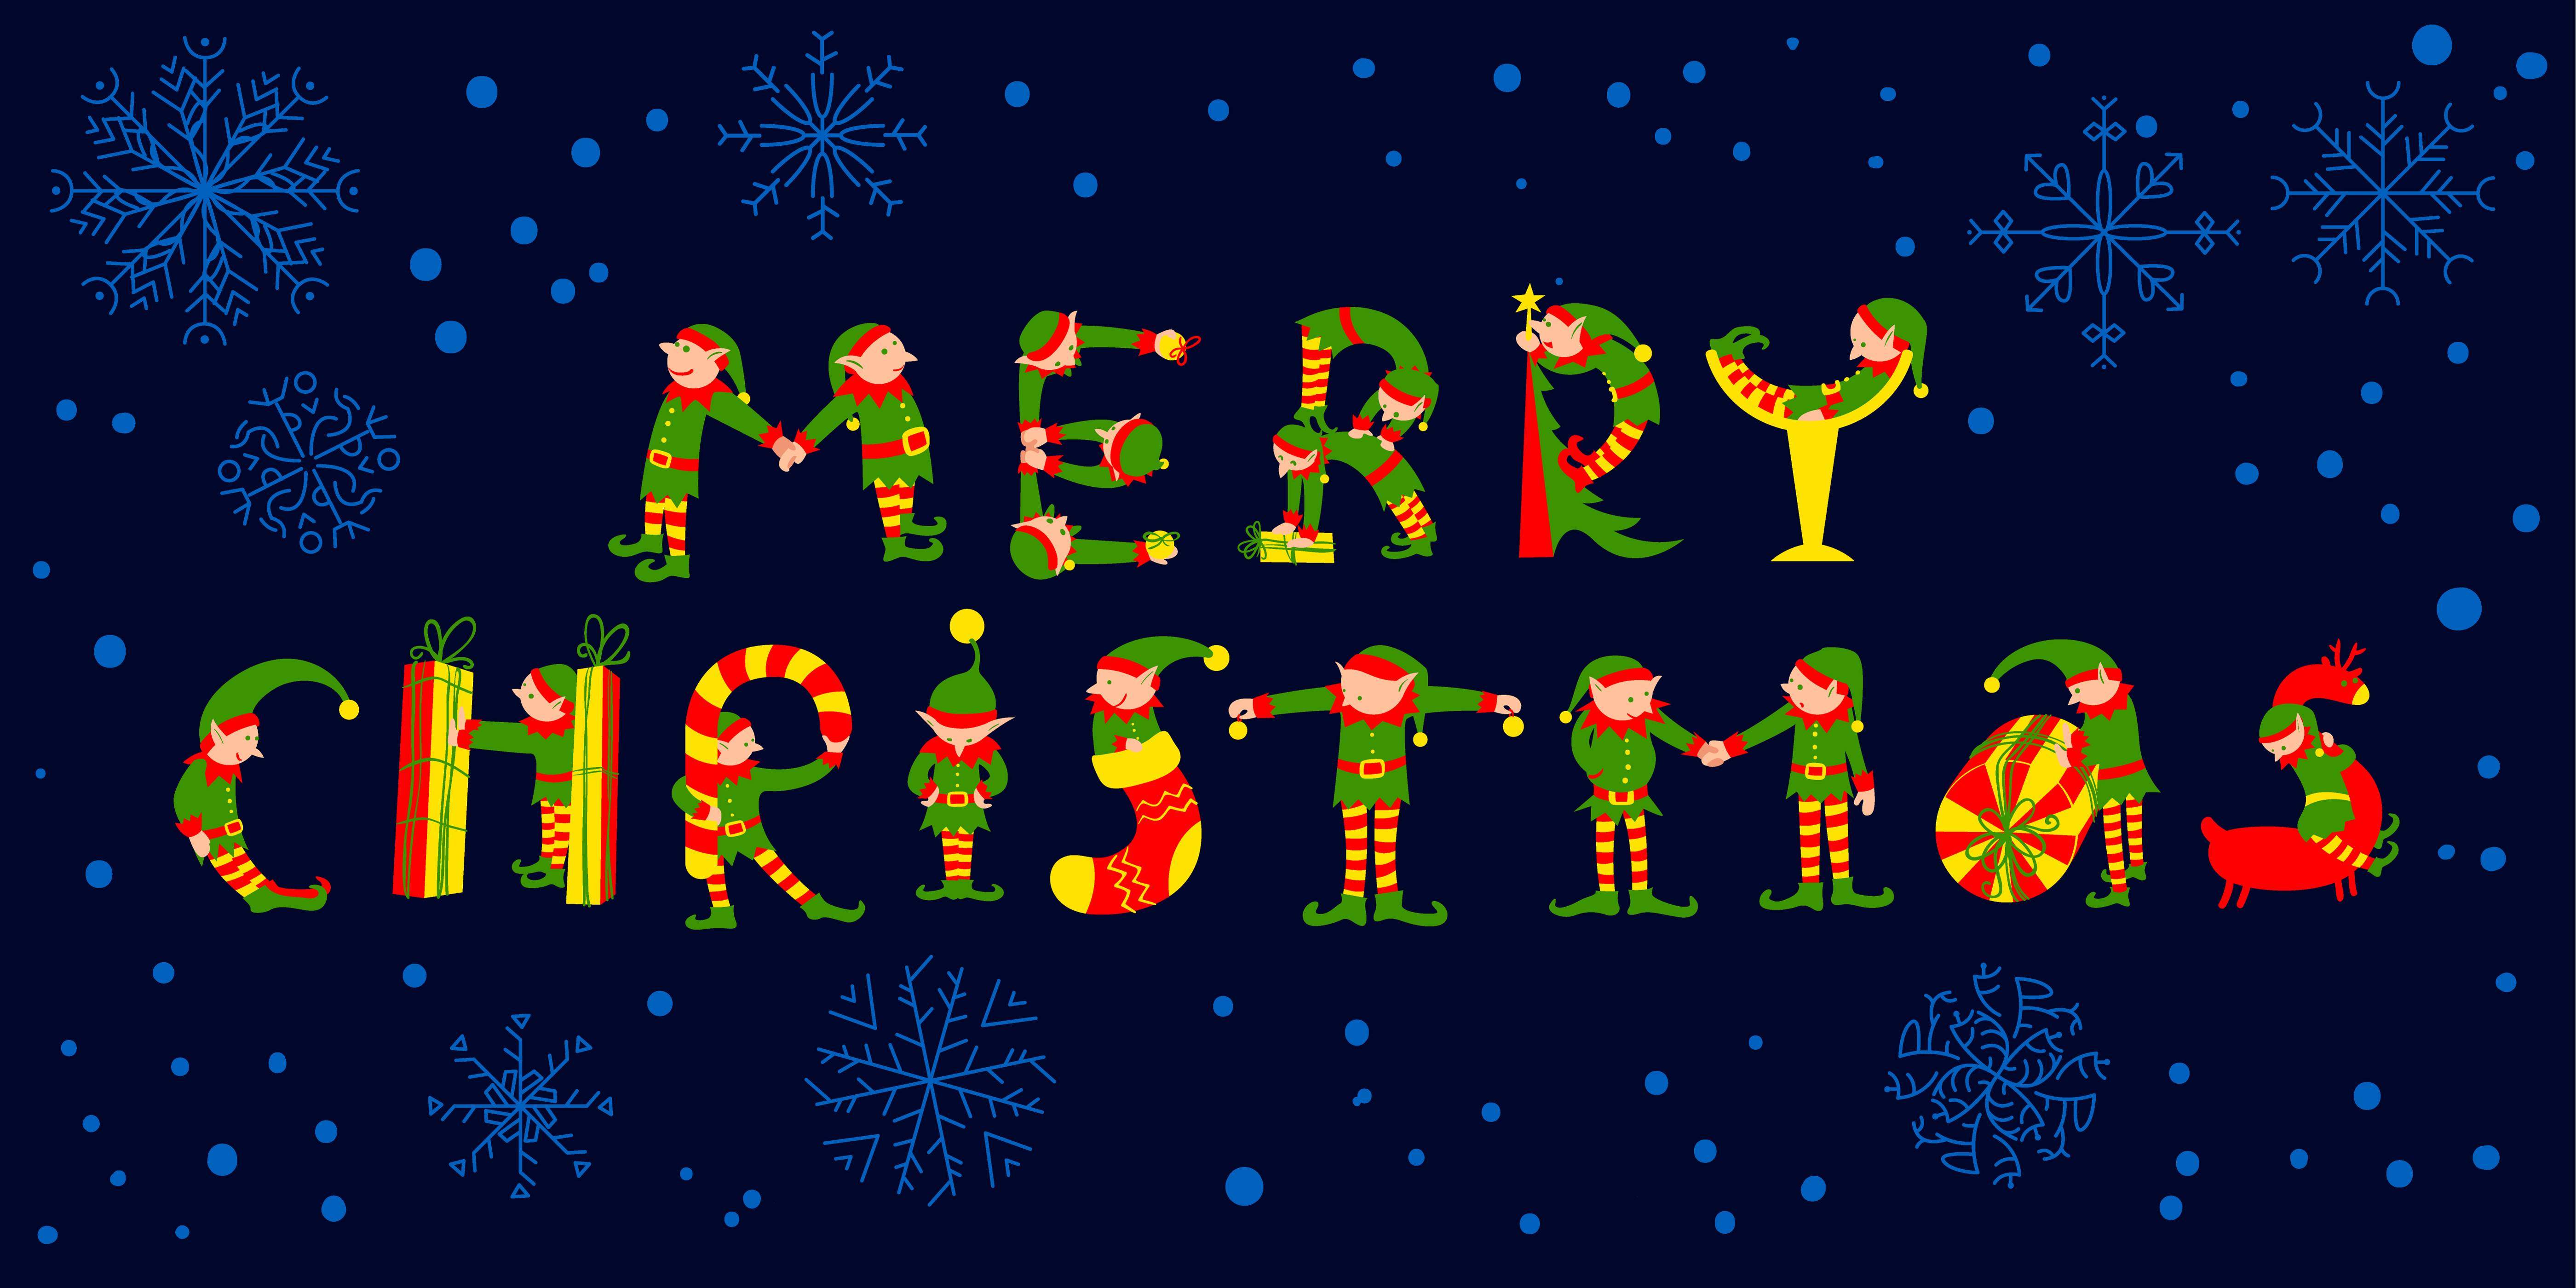 Christmas 2018 Logo - 2018 Walk Logo Merry Christmas Elves - Morrison Chamber of Commerce ...